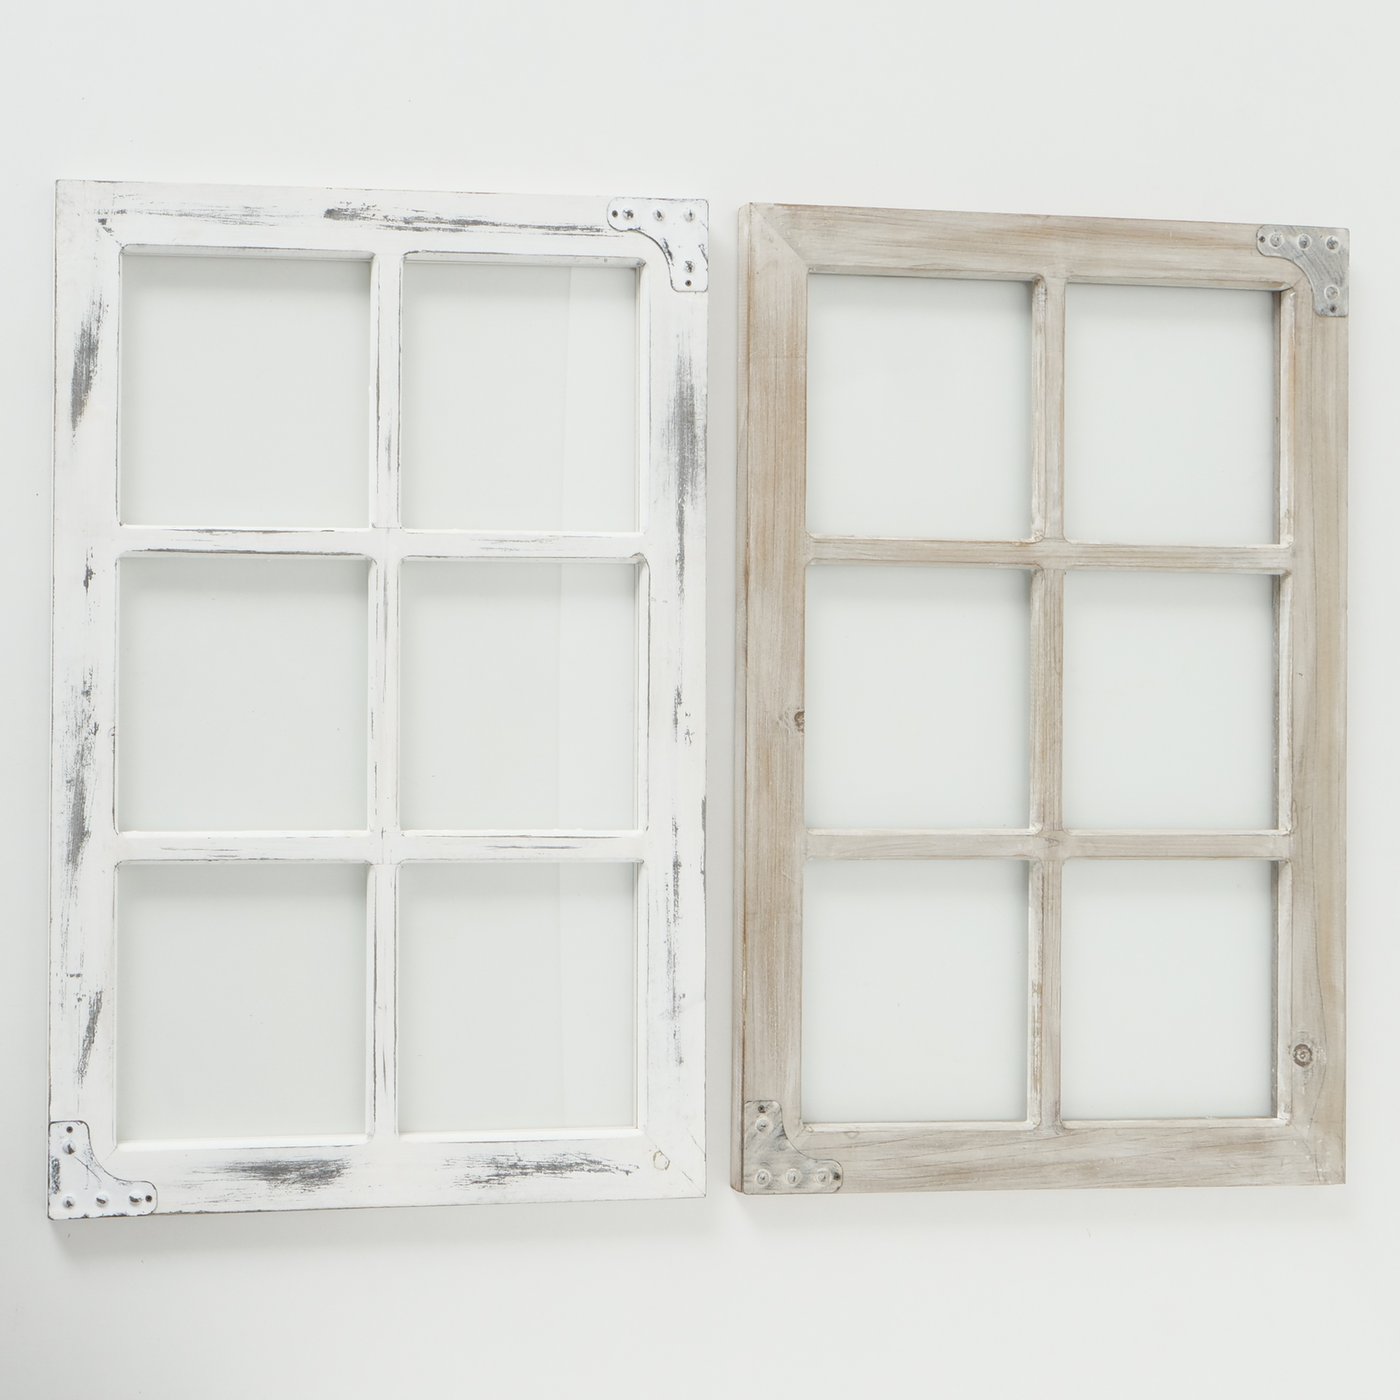 Deko-Sprossenfenster weiß gewischt oder braun